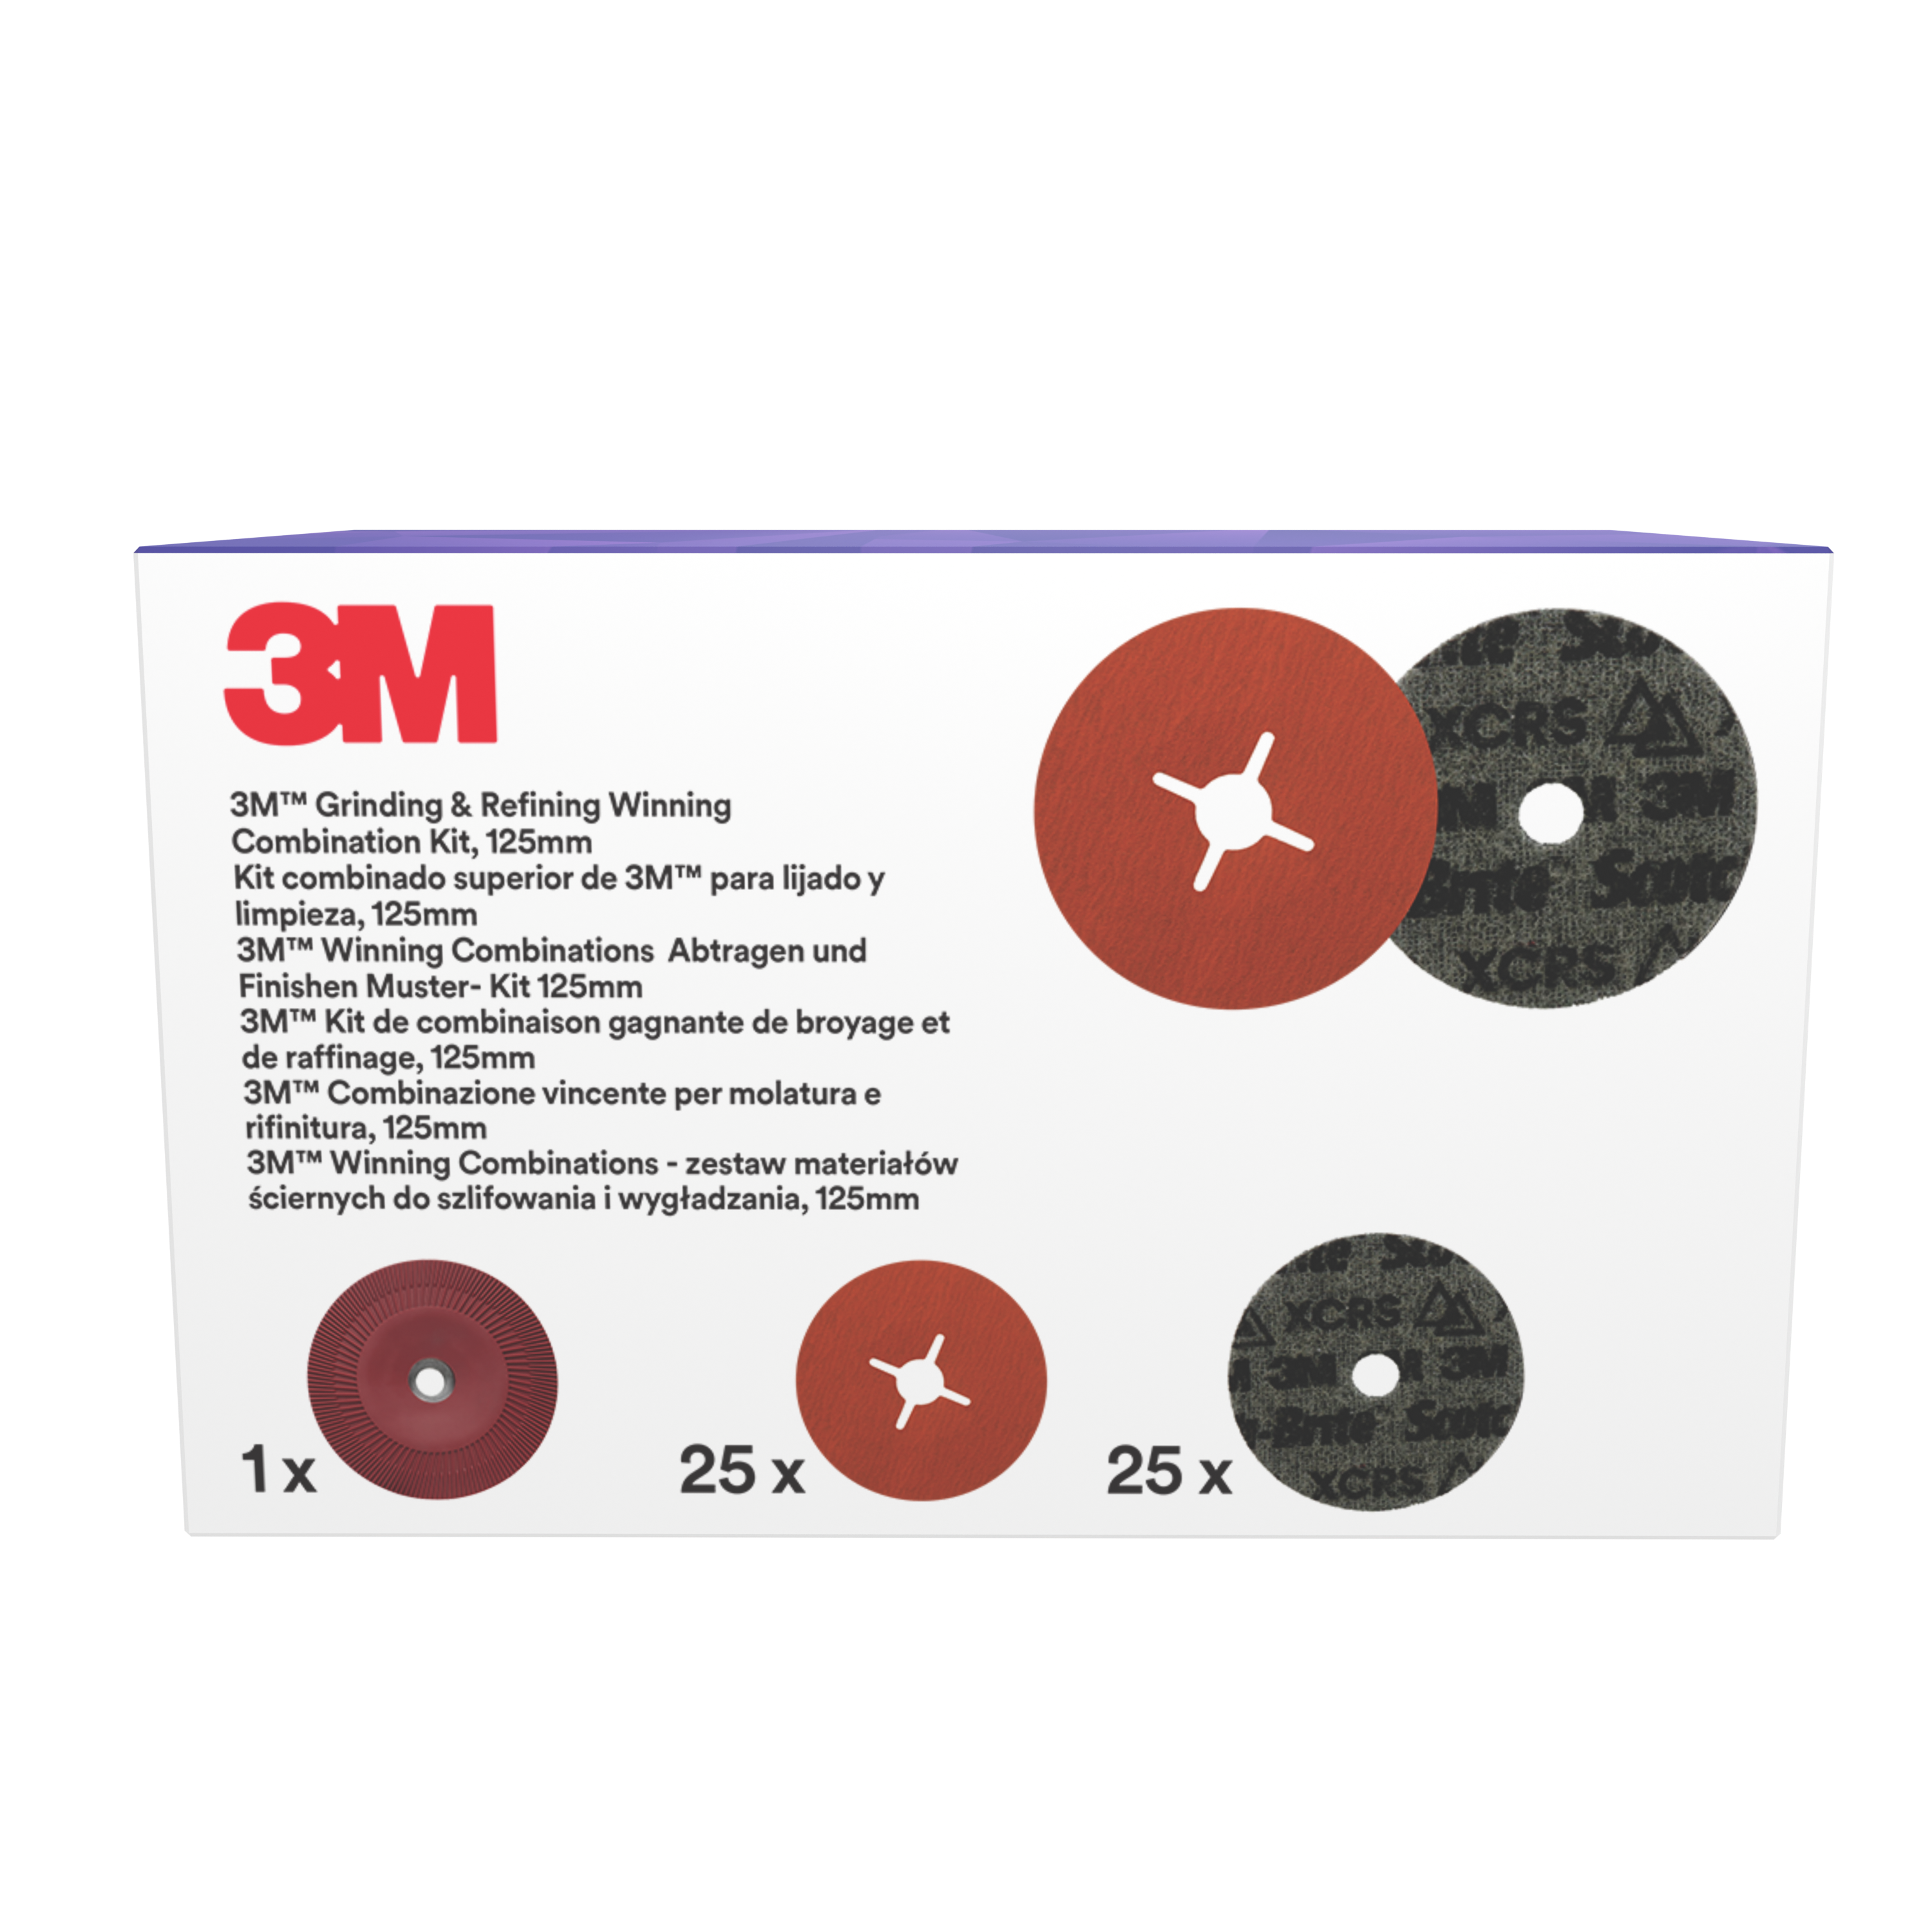 3M™ | Grinding & Refining Kit | enthält 125mm 787C Fiber- und PN-DH Vliesscheibe, mit flachem Stützteller